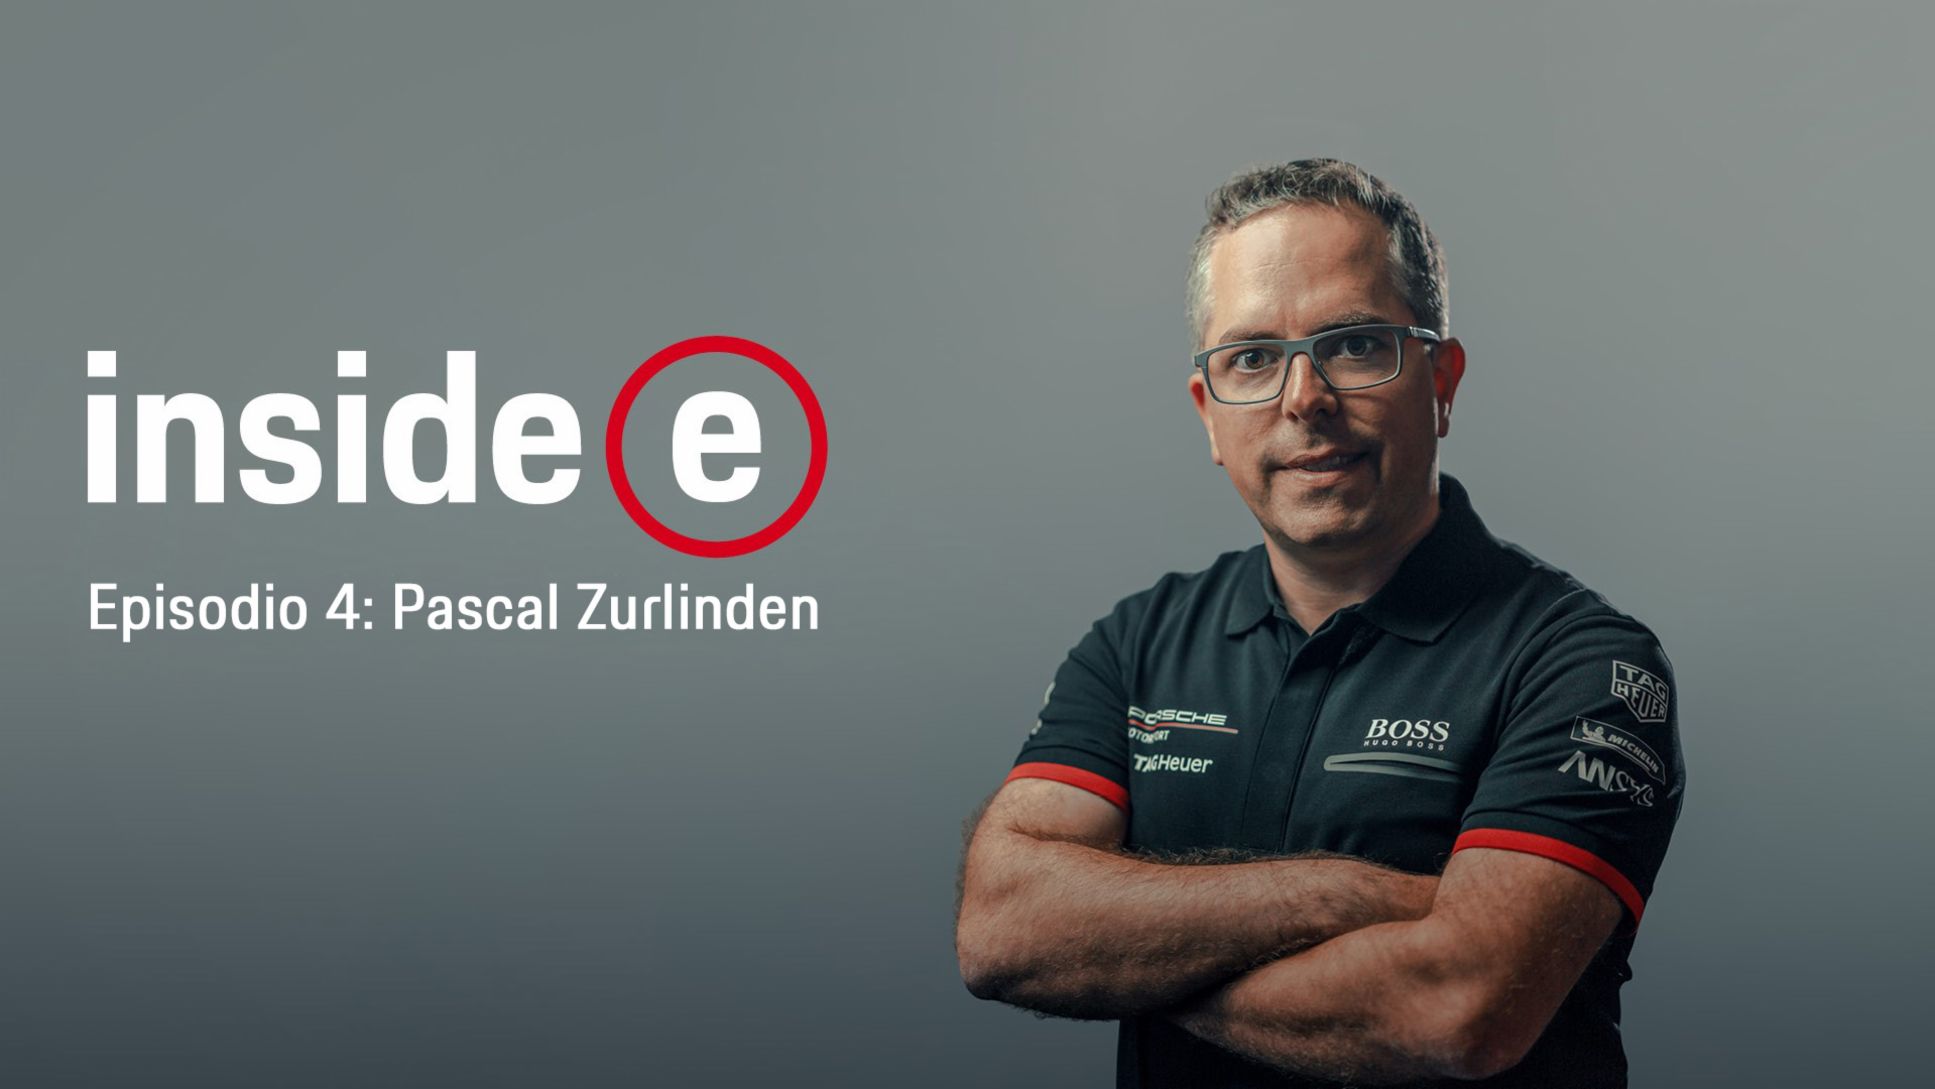 Podcast “Inside E”, episodio 4 con Pascal Zurlinden, 2020, Porsche AG